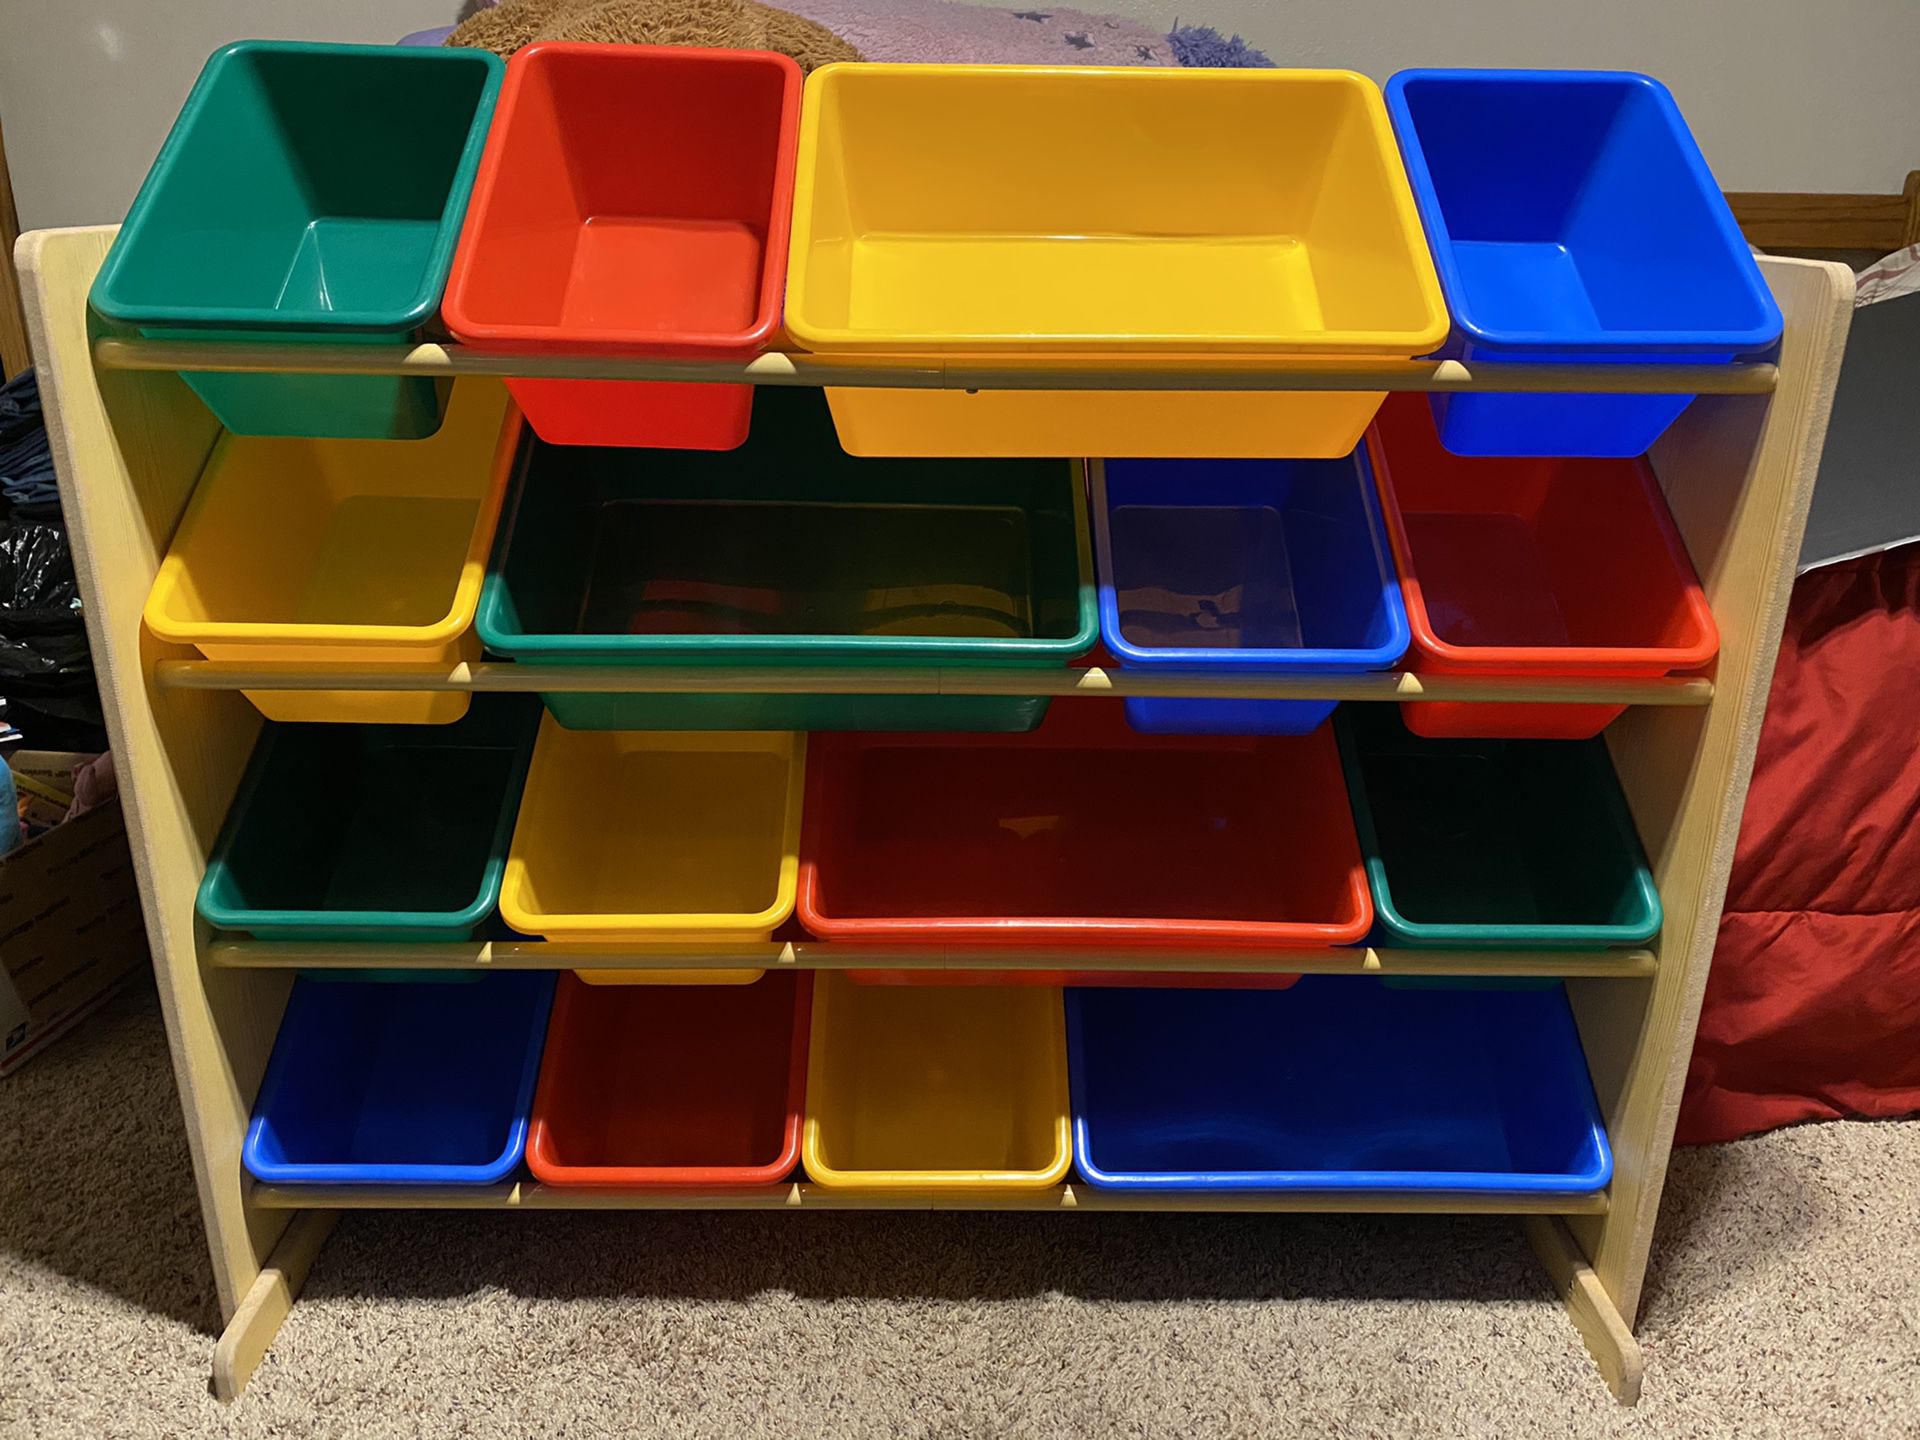 Mint condition 16 bin toy organizer